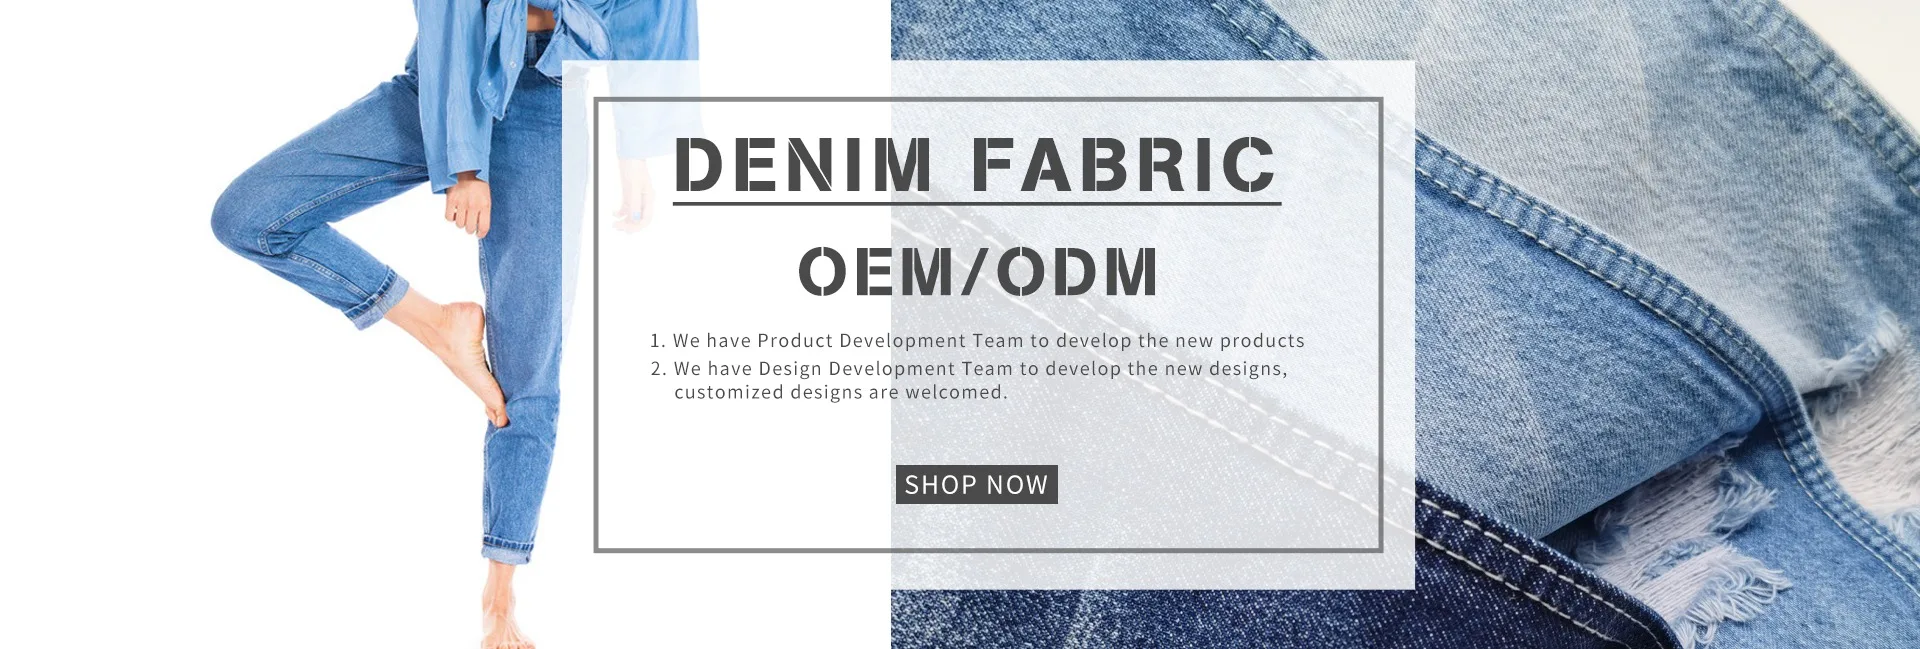 Zhe Jiang Jie Gao Textile Co., Ltd. - Denim Fabric, Fabric